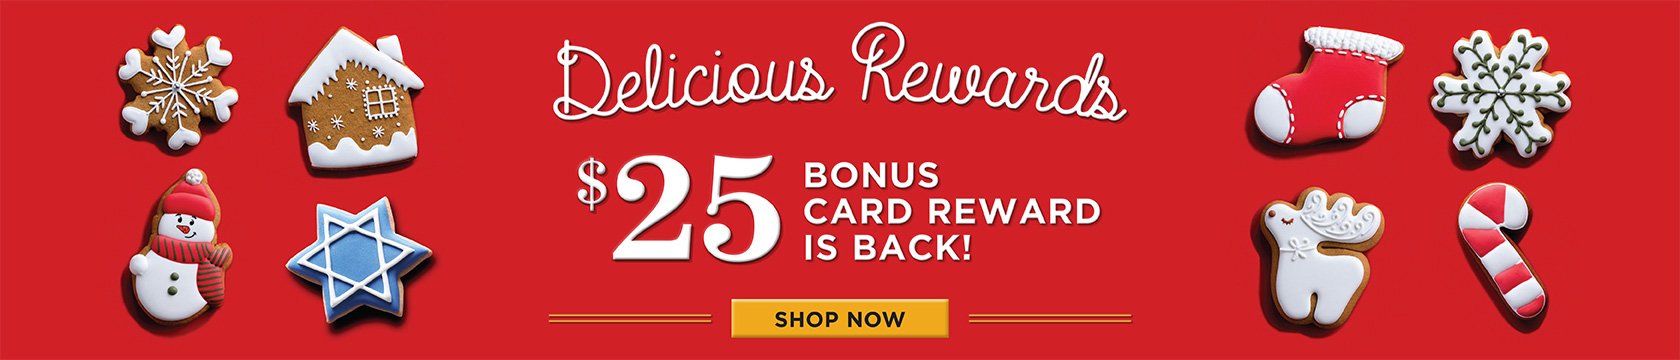 Delicious Rewards - $25 bonus card reward is back - shop now!